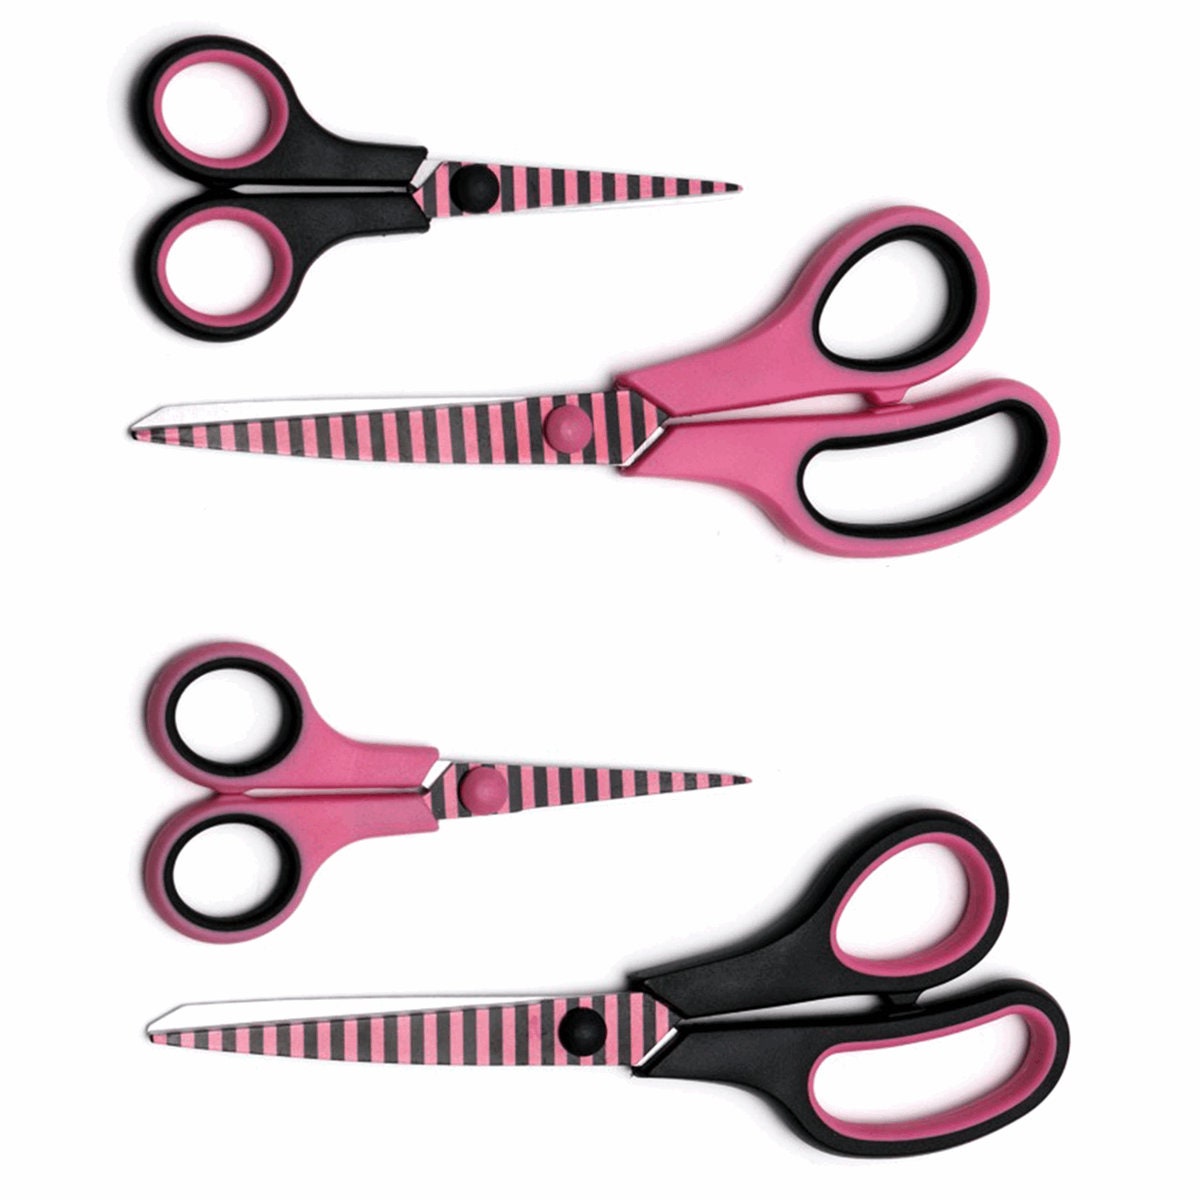 Tacony TACB4835 Scissor Set Pop Hot Pink Floral